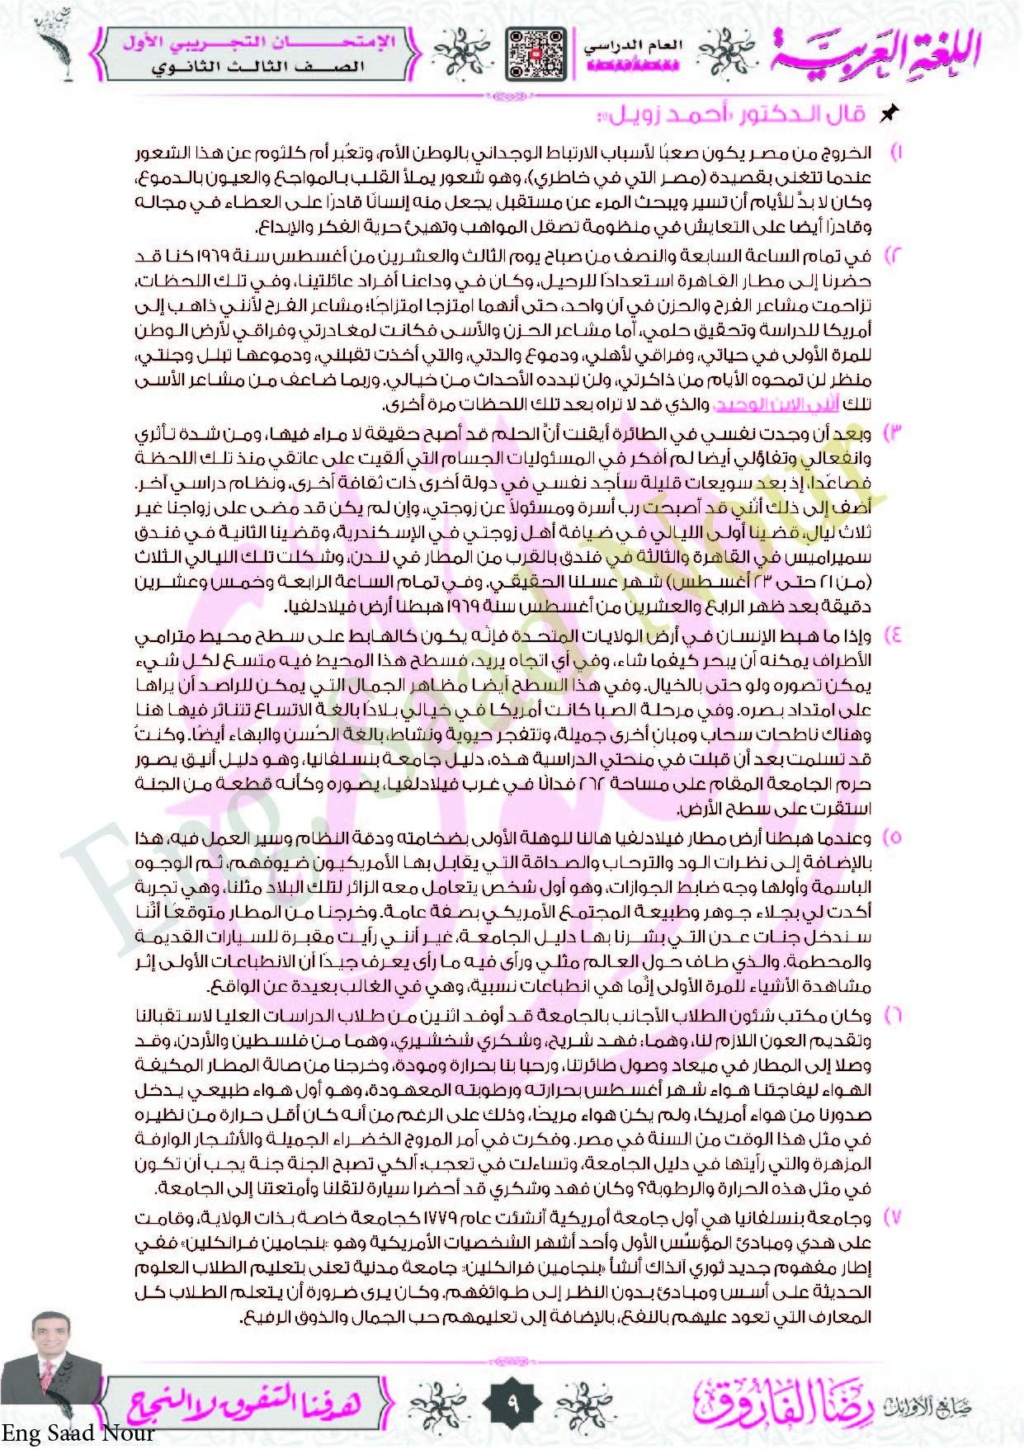 نموذج إختبار تجريبي لغة عربية شامل مجاب عنه للثانوية العامة 2023 لمستر/ رضا فاروق 9-10